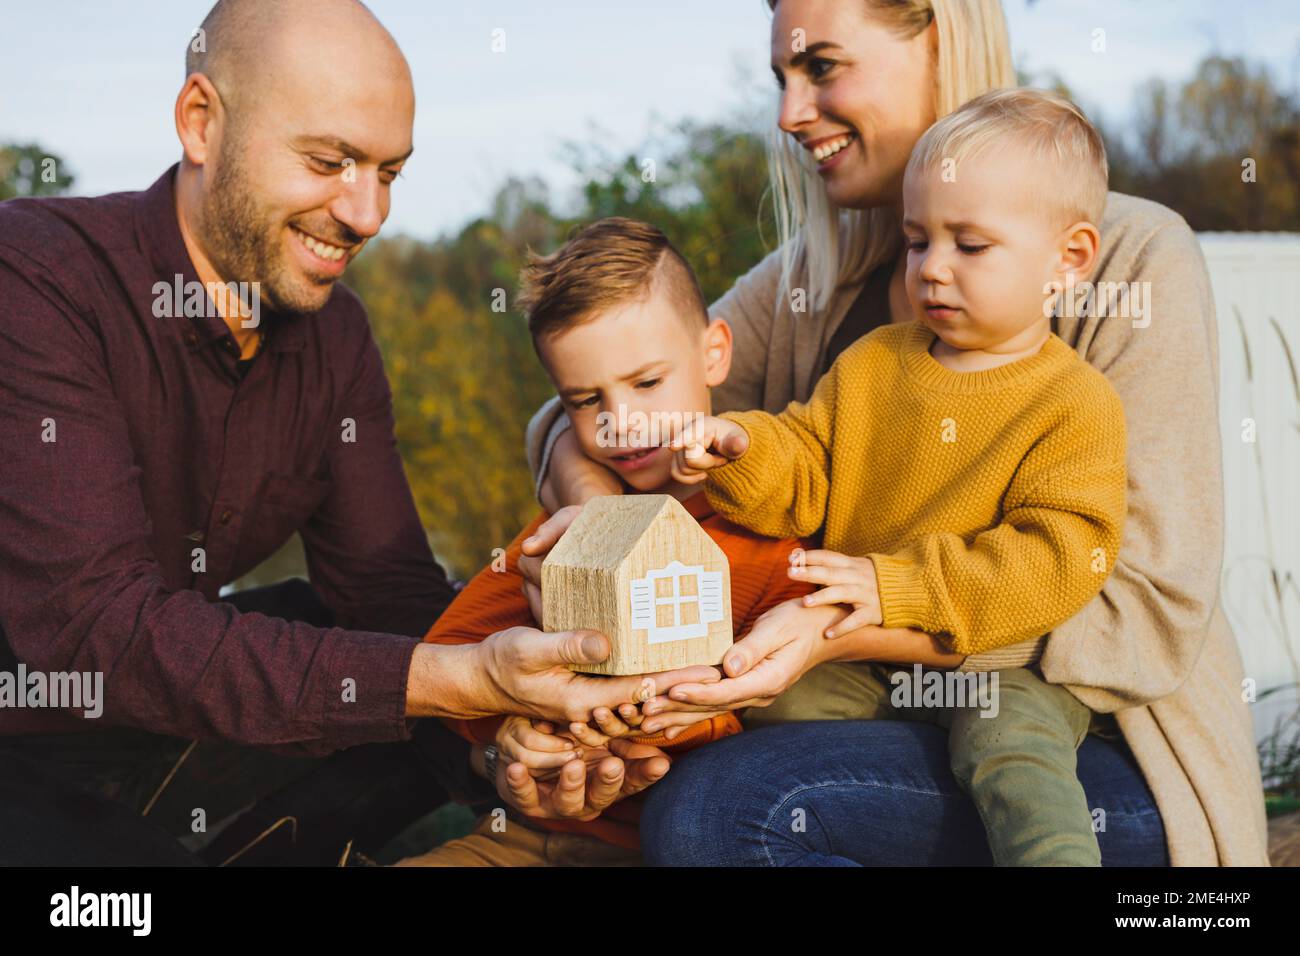 Genitori felici con i bambini che tengono la casa del modello nella natura Foto Stock